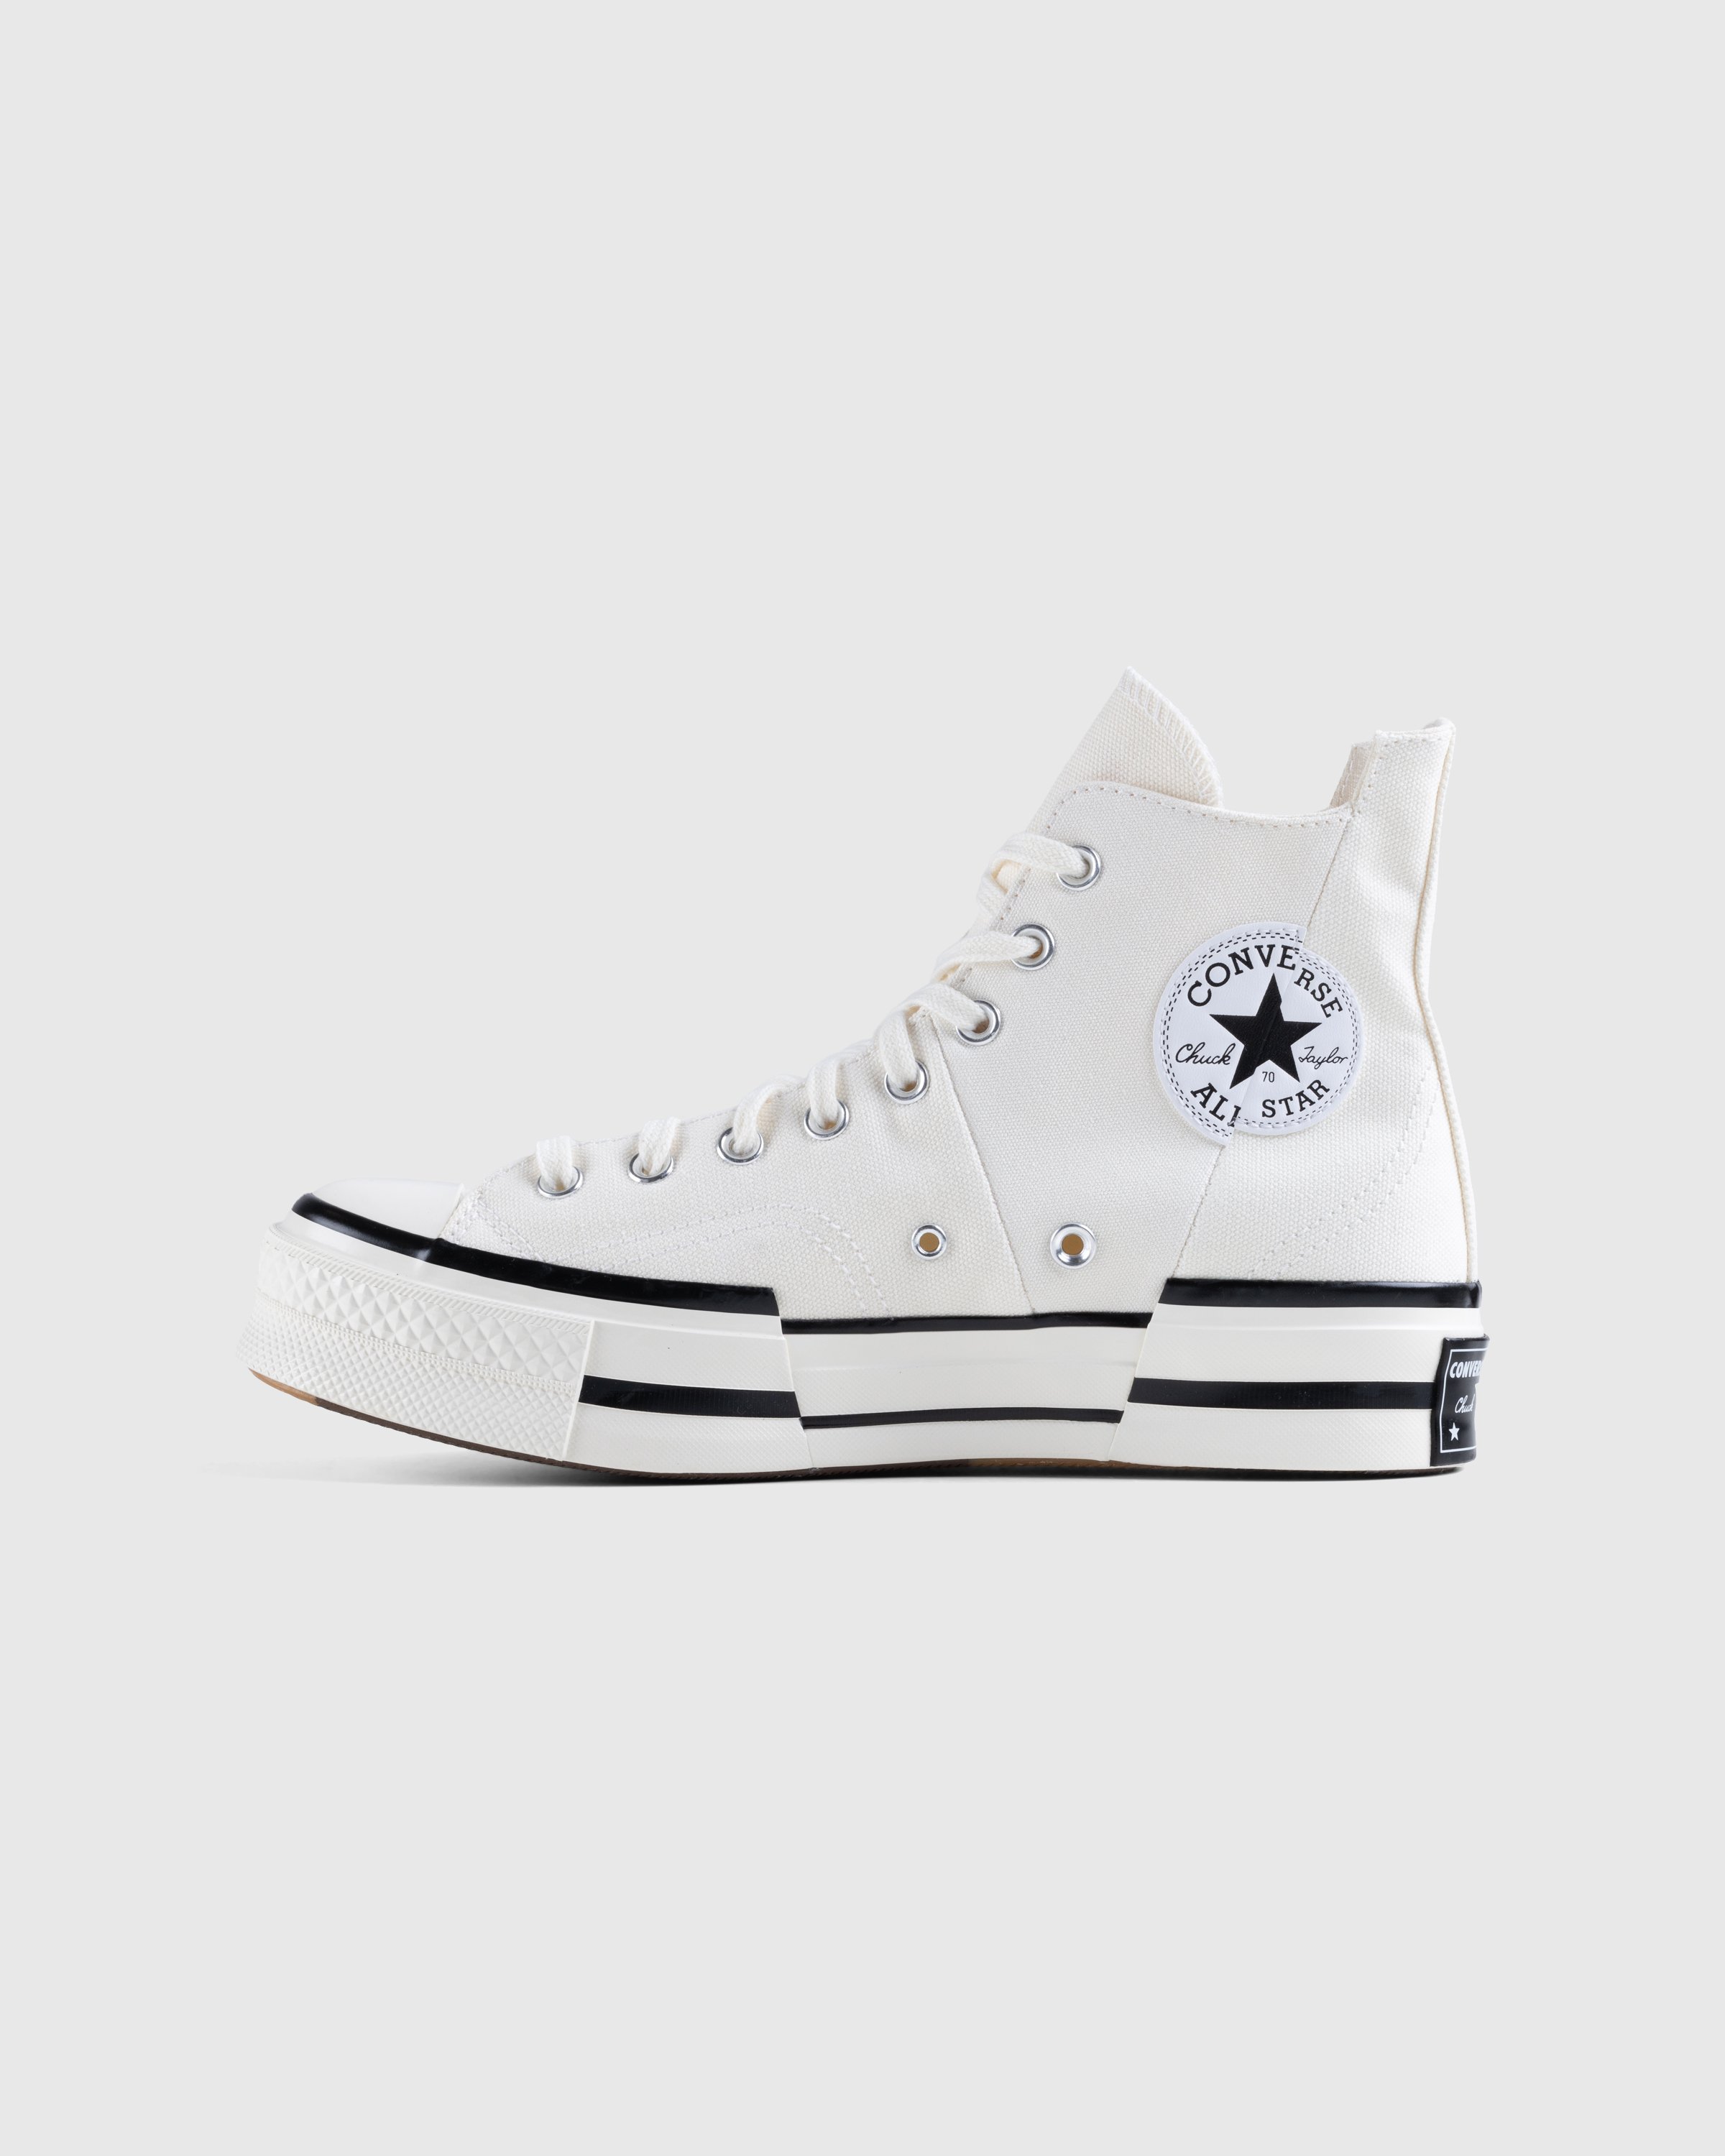 Converse - Chuck 70 Plus Canvas Egret/Black/Egret - Footwear - White - Image 2